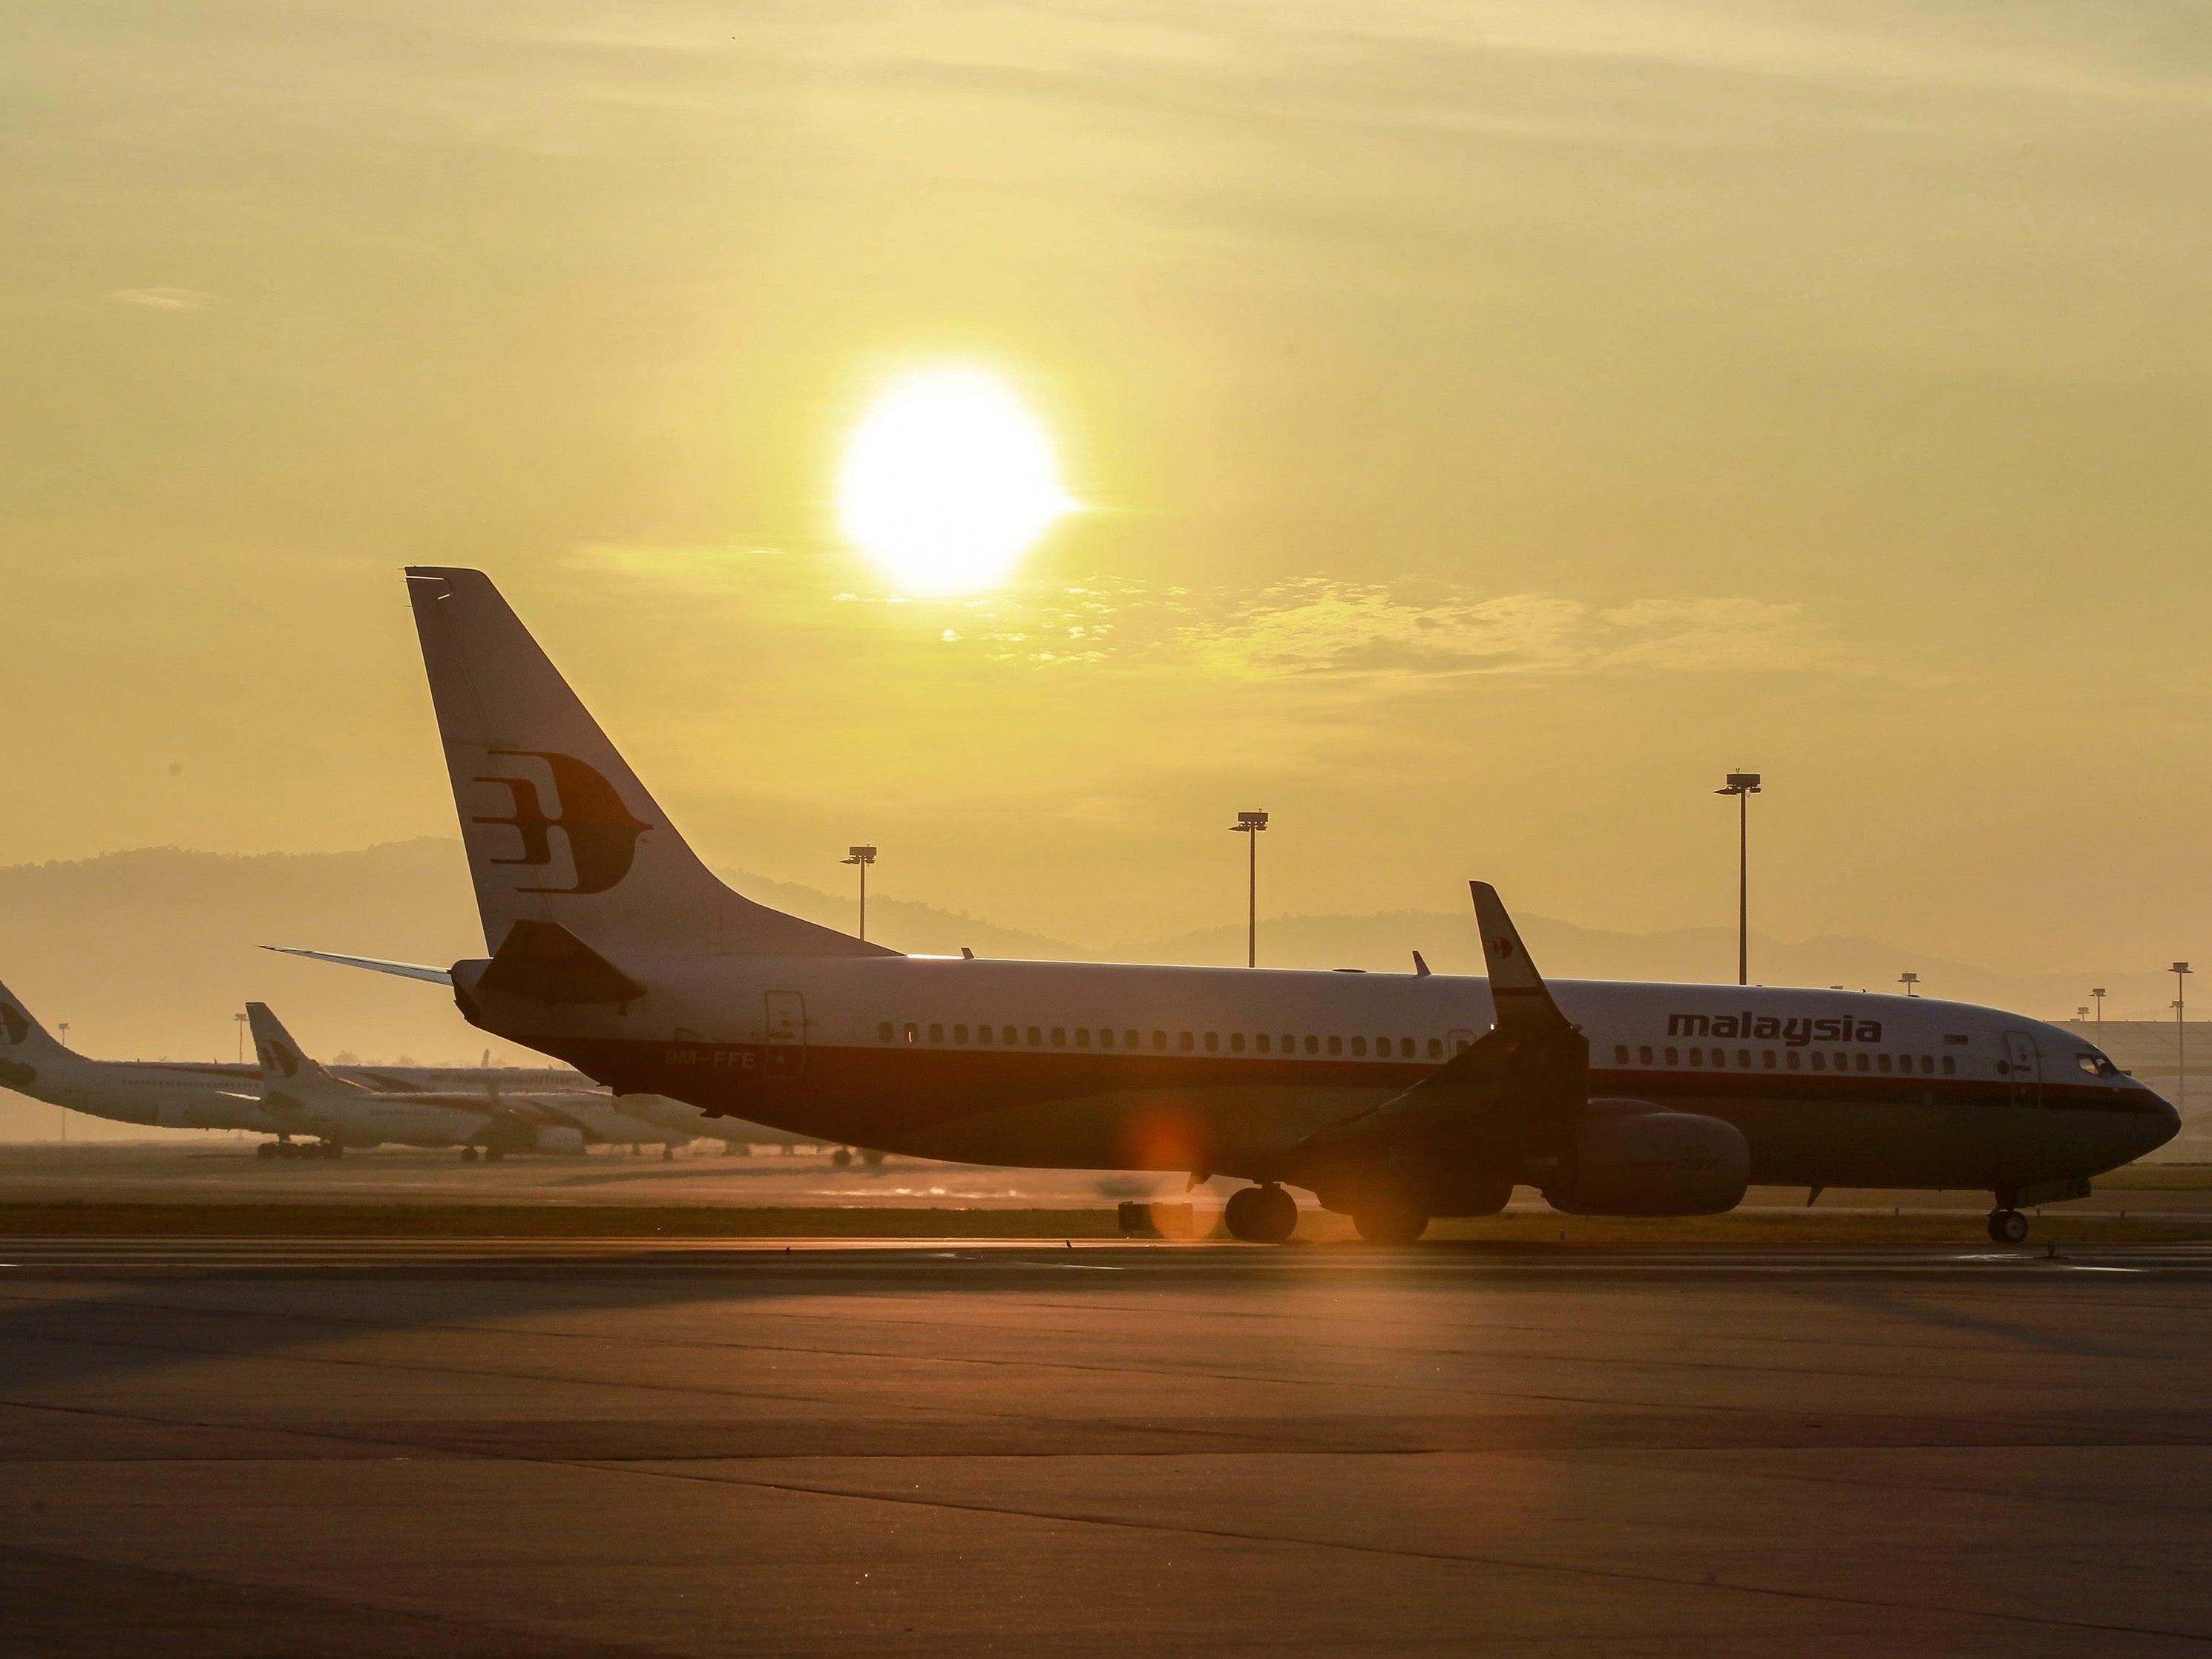 Insgesamt haben fast 200 Mitarbeiter bei Malaysia Airlines gekündigt